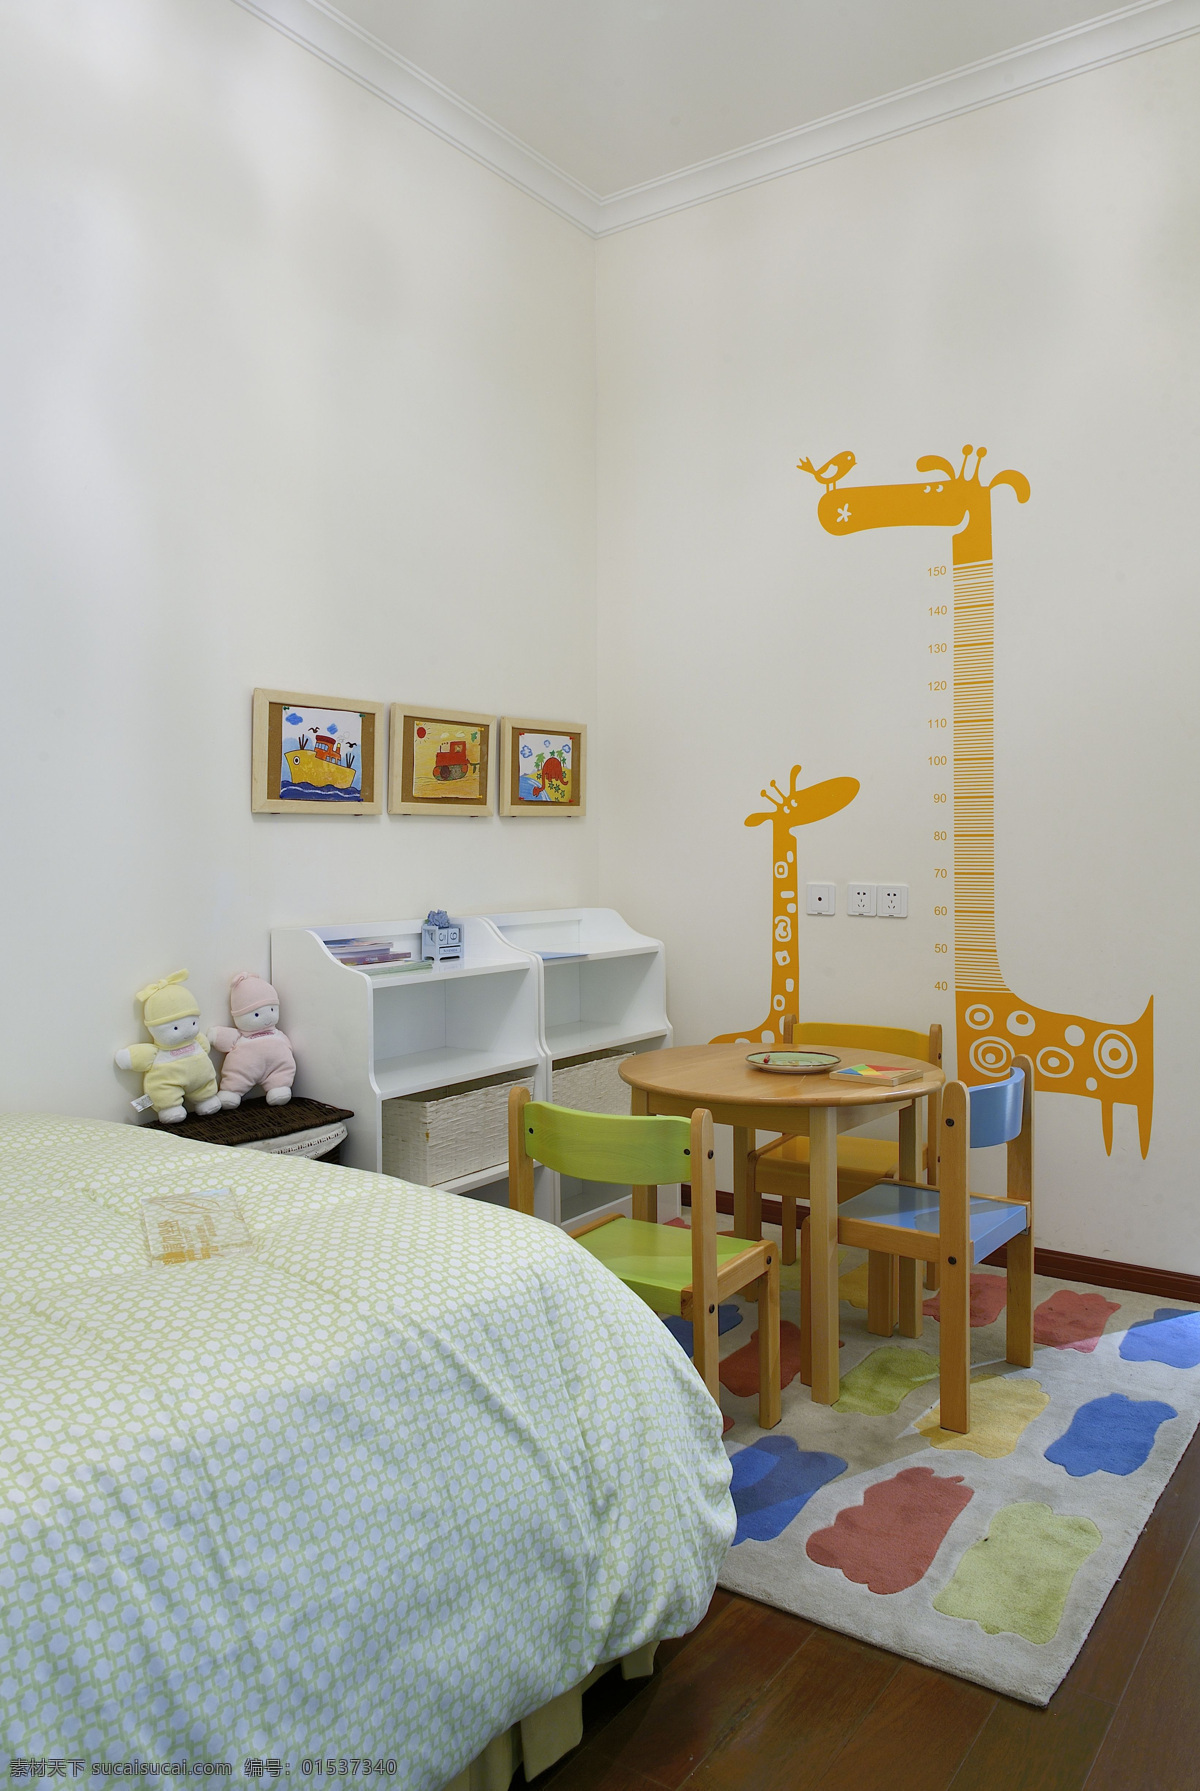 小 户型 室内 儿童 卧室 设计图 家居 家居生活 室内设计 装修 家具 装修设计 环境设计